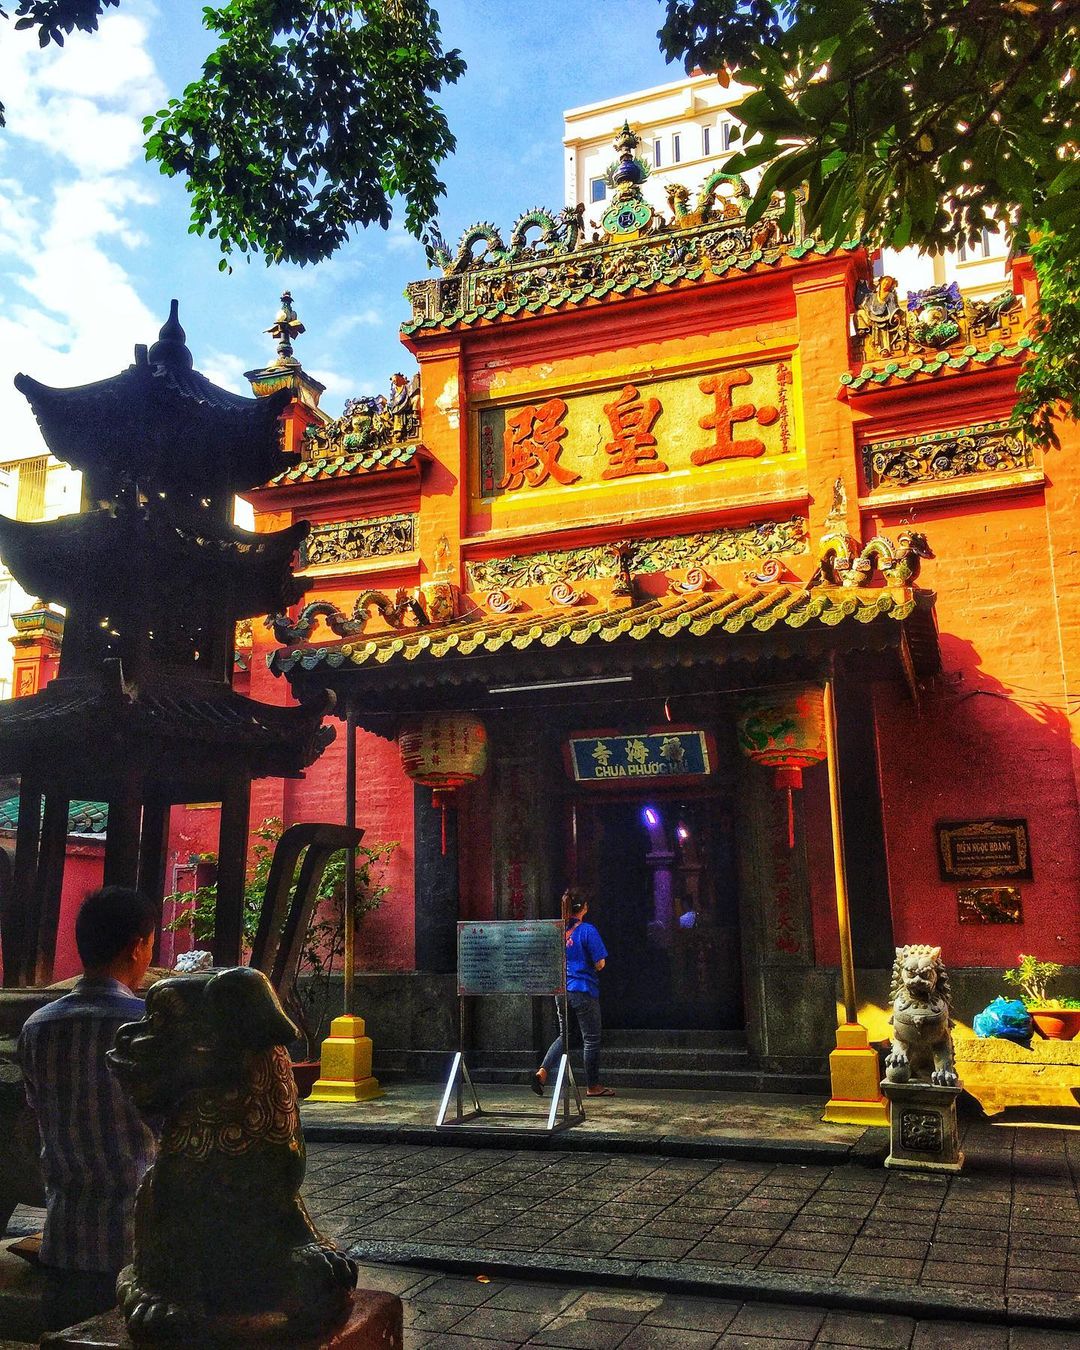 Đầu năm dân Sài Gòn đội nắng xin quẻ ở máy nhả xăm tự động trong chùa